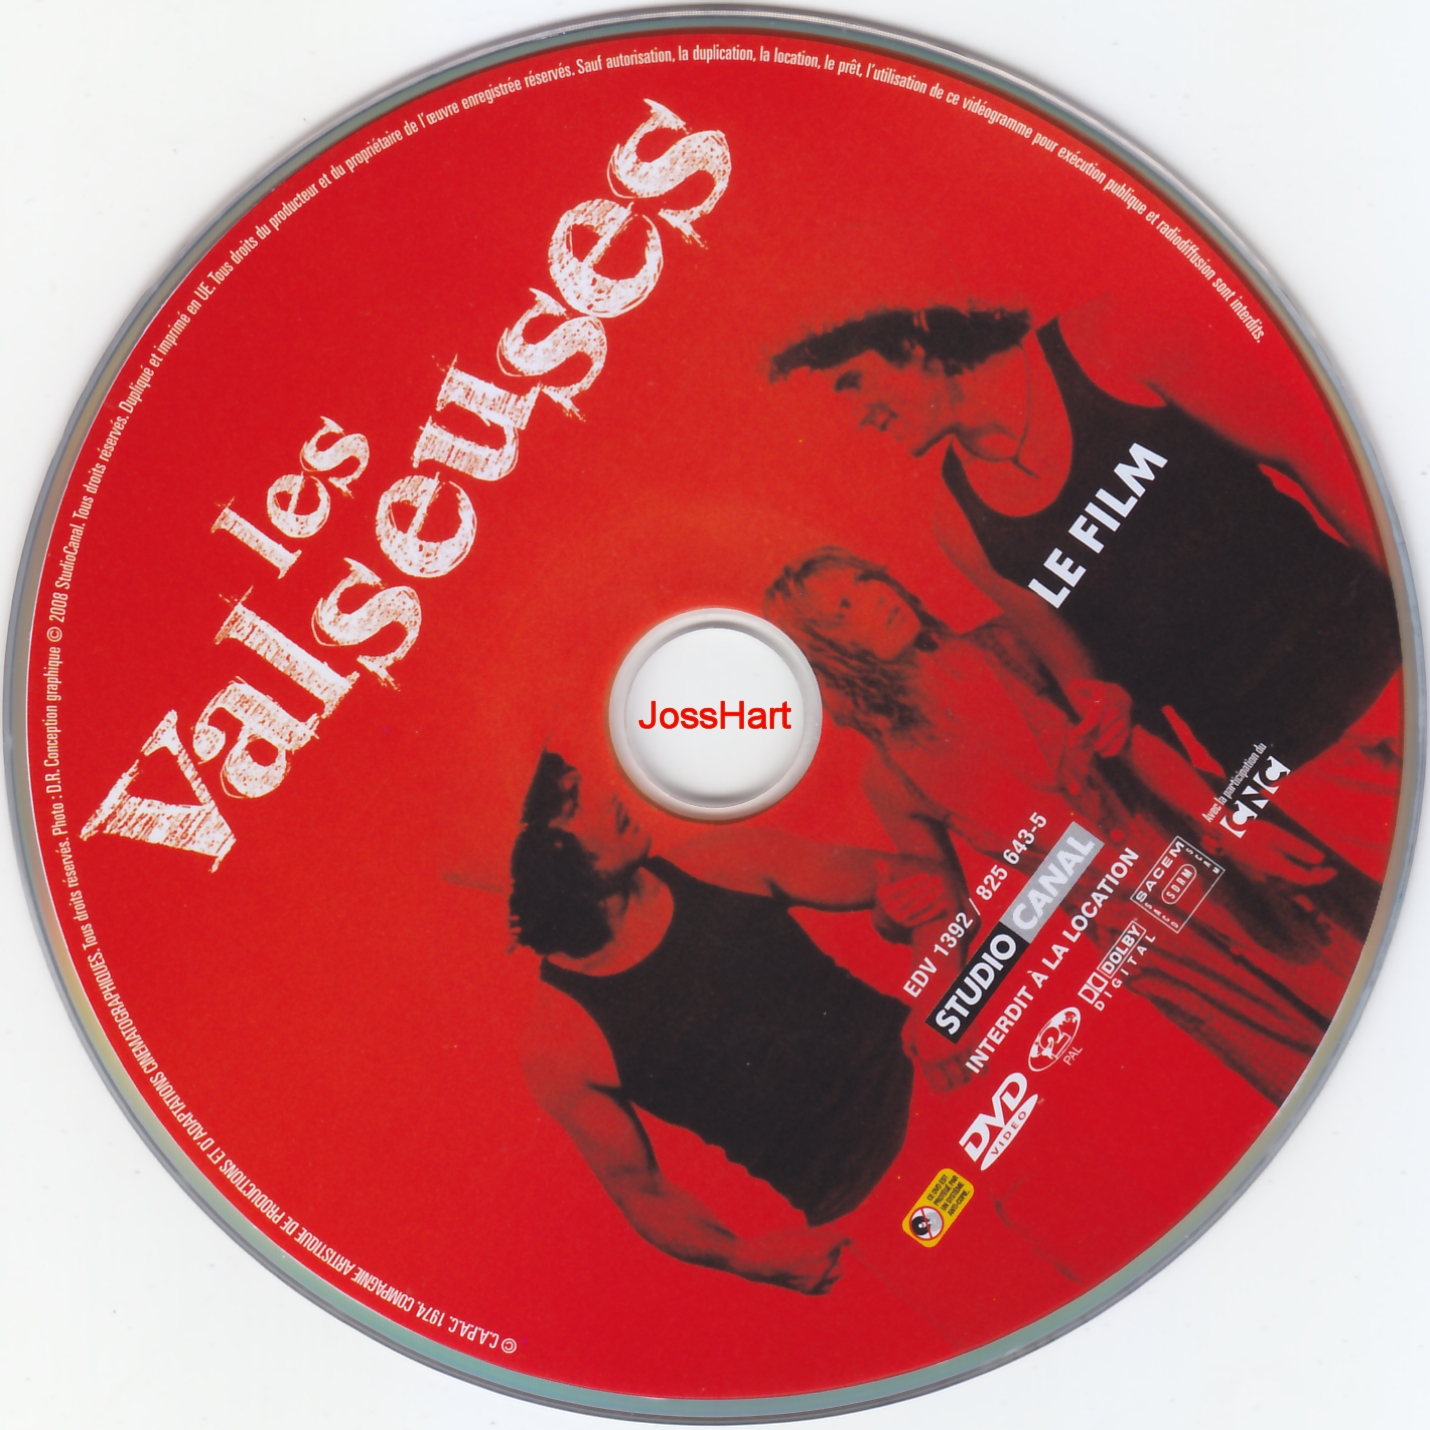 Les Valseuses DISC 1